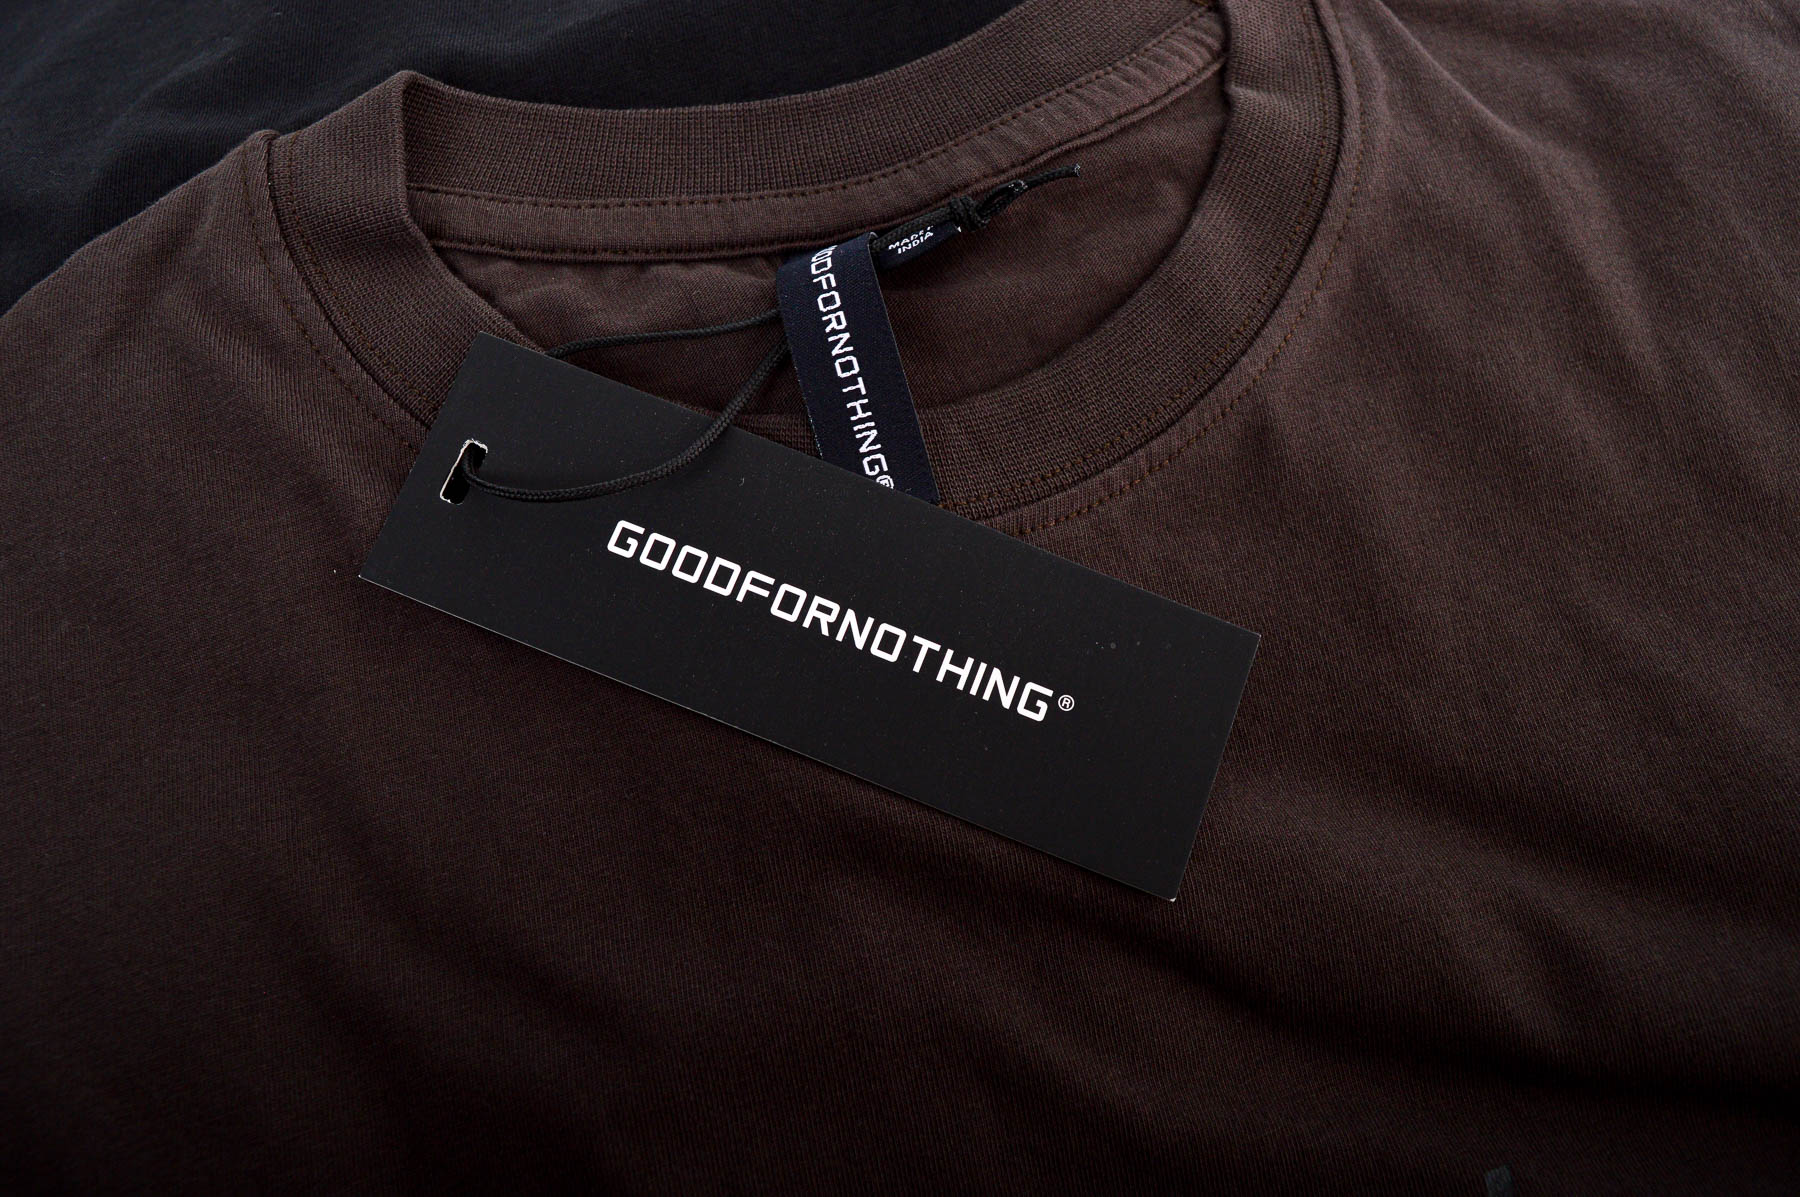 Αντρική μπλούζα - GOODFORNOTHING - 2